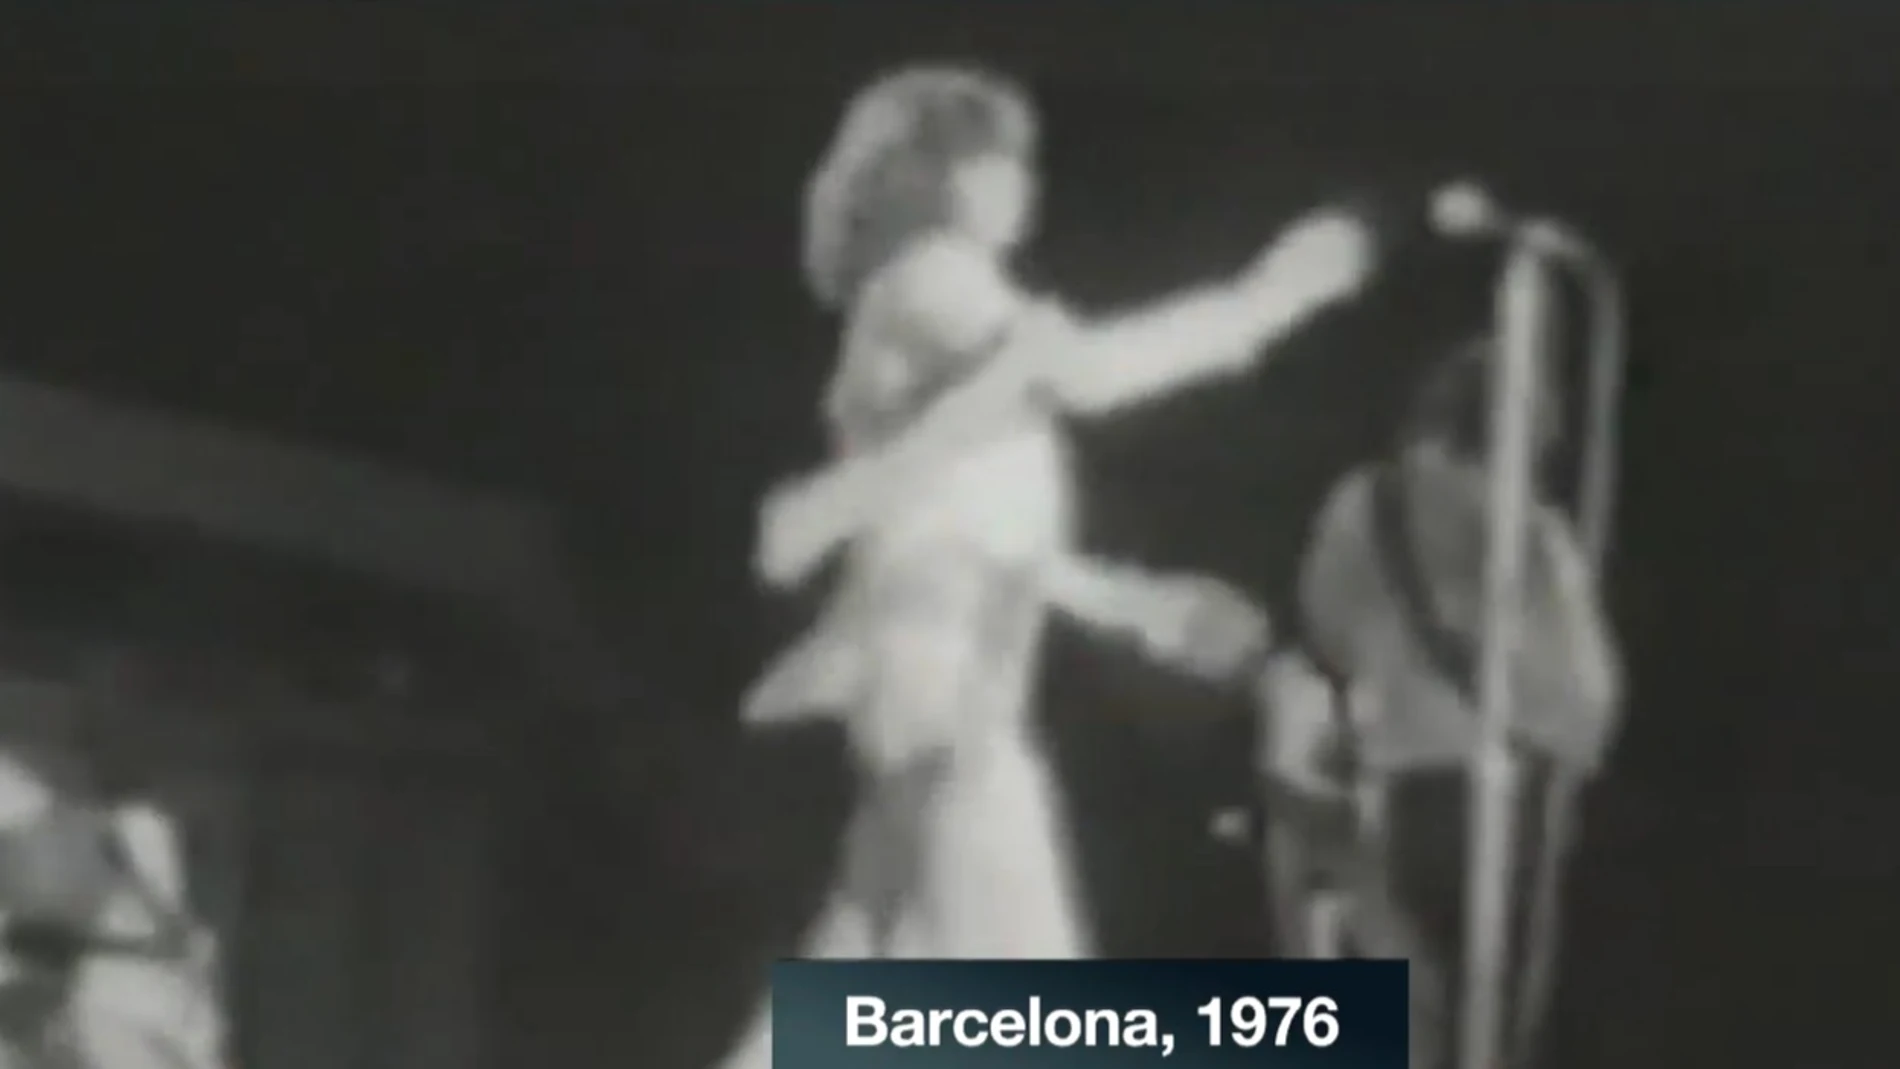 Concierto de los Rolling Stones en España en 1976